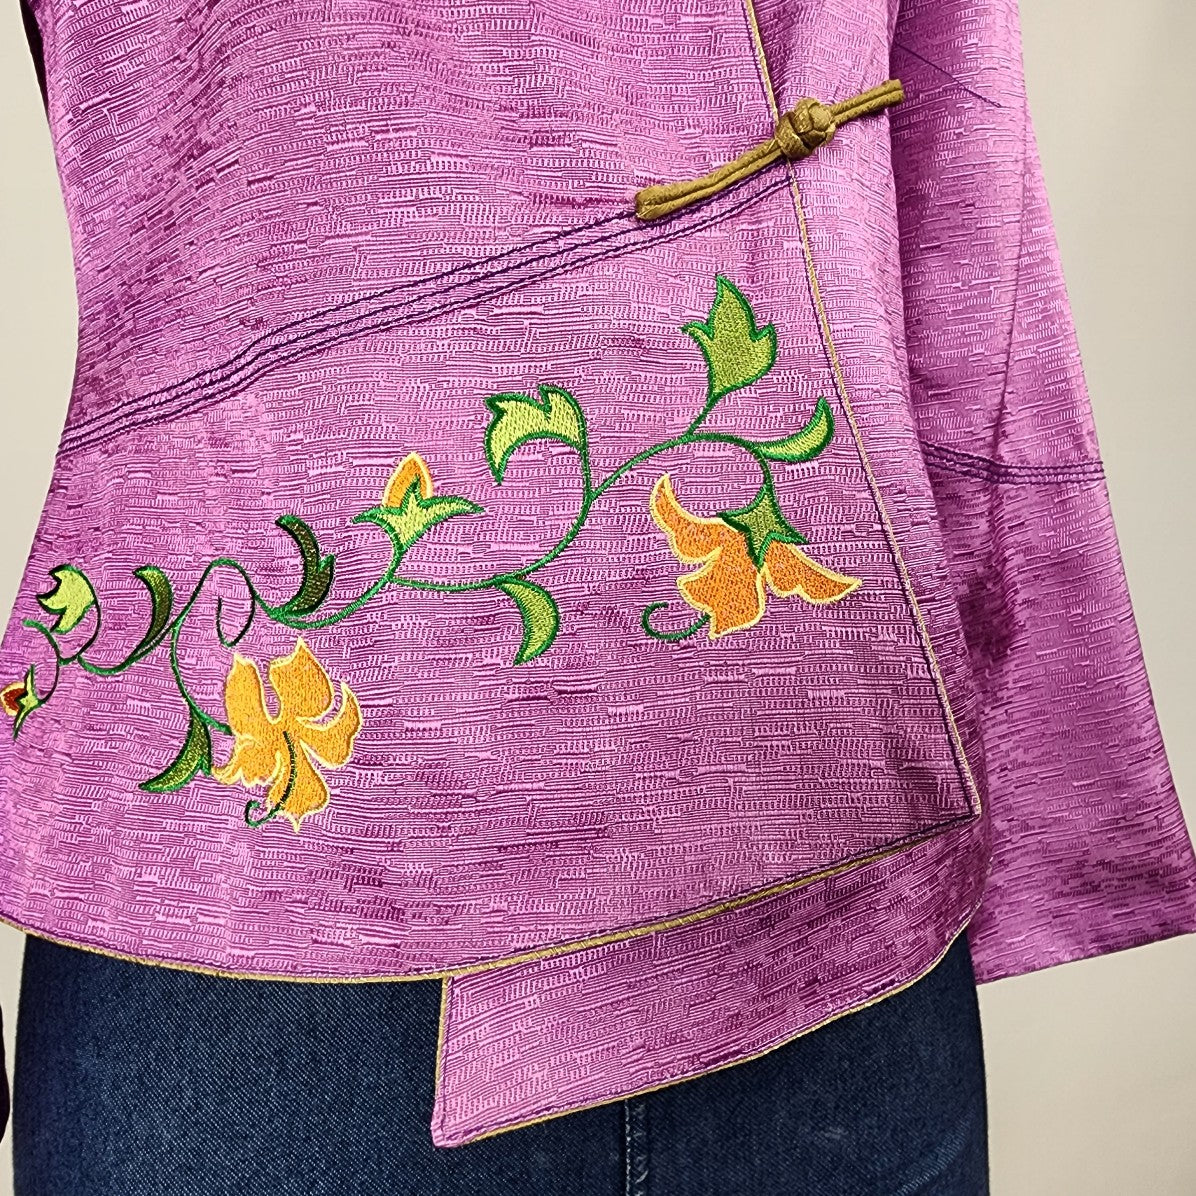 Vintage Silver Dragon Purple Floral Brocade Silk Jacket Size S/M